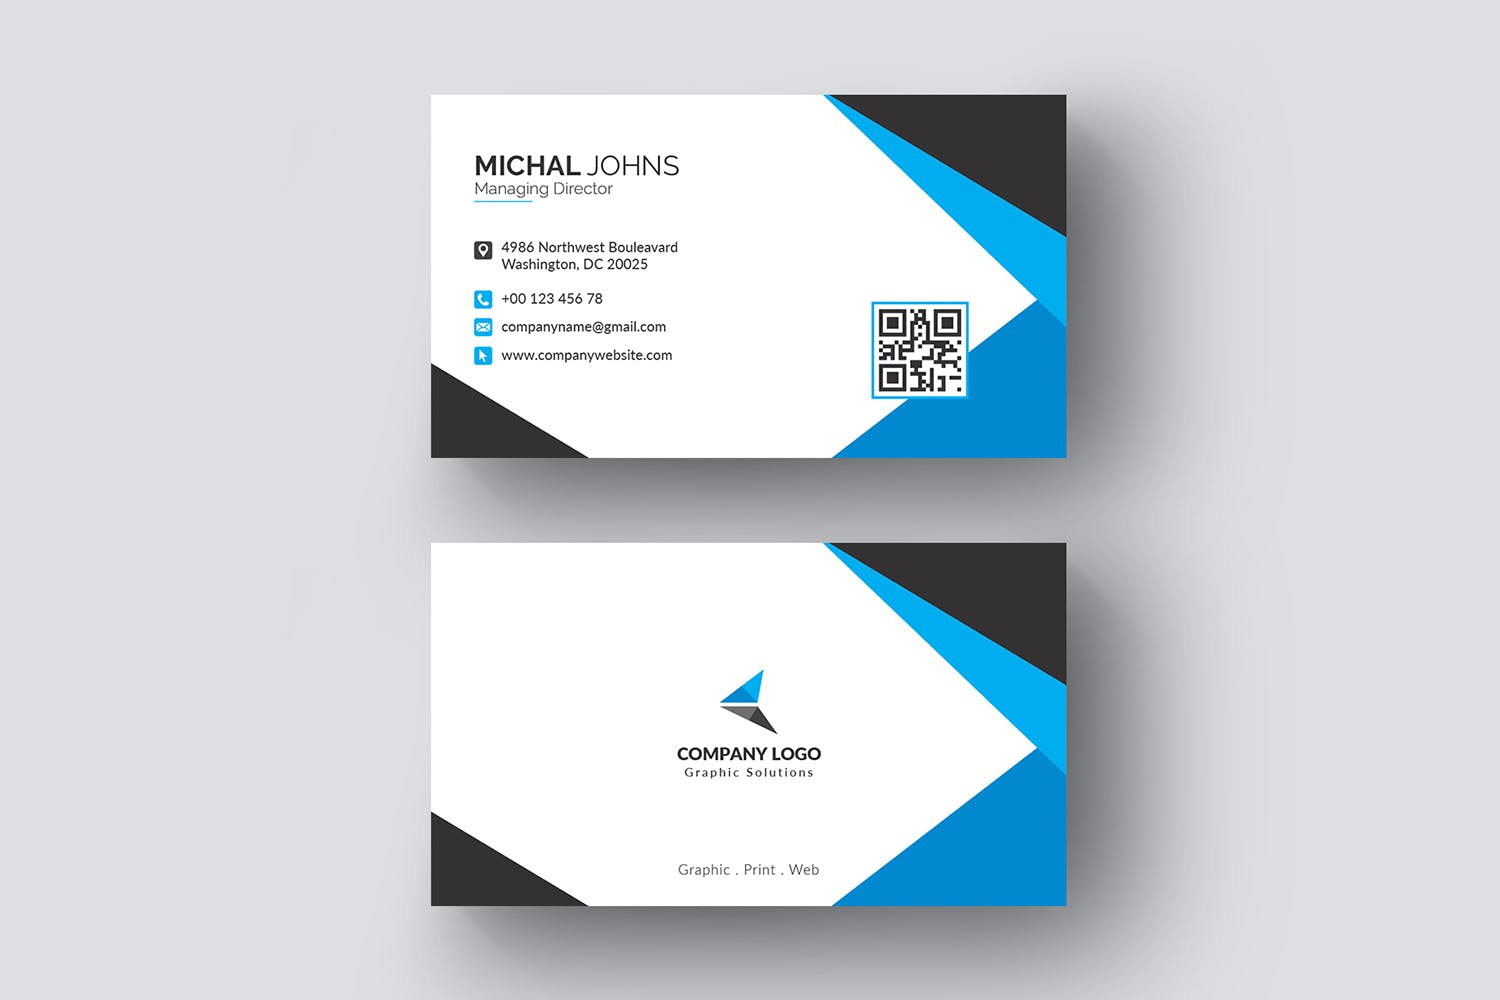 现代创意设计风格企业名片模板 Business Card插图(1)